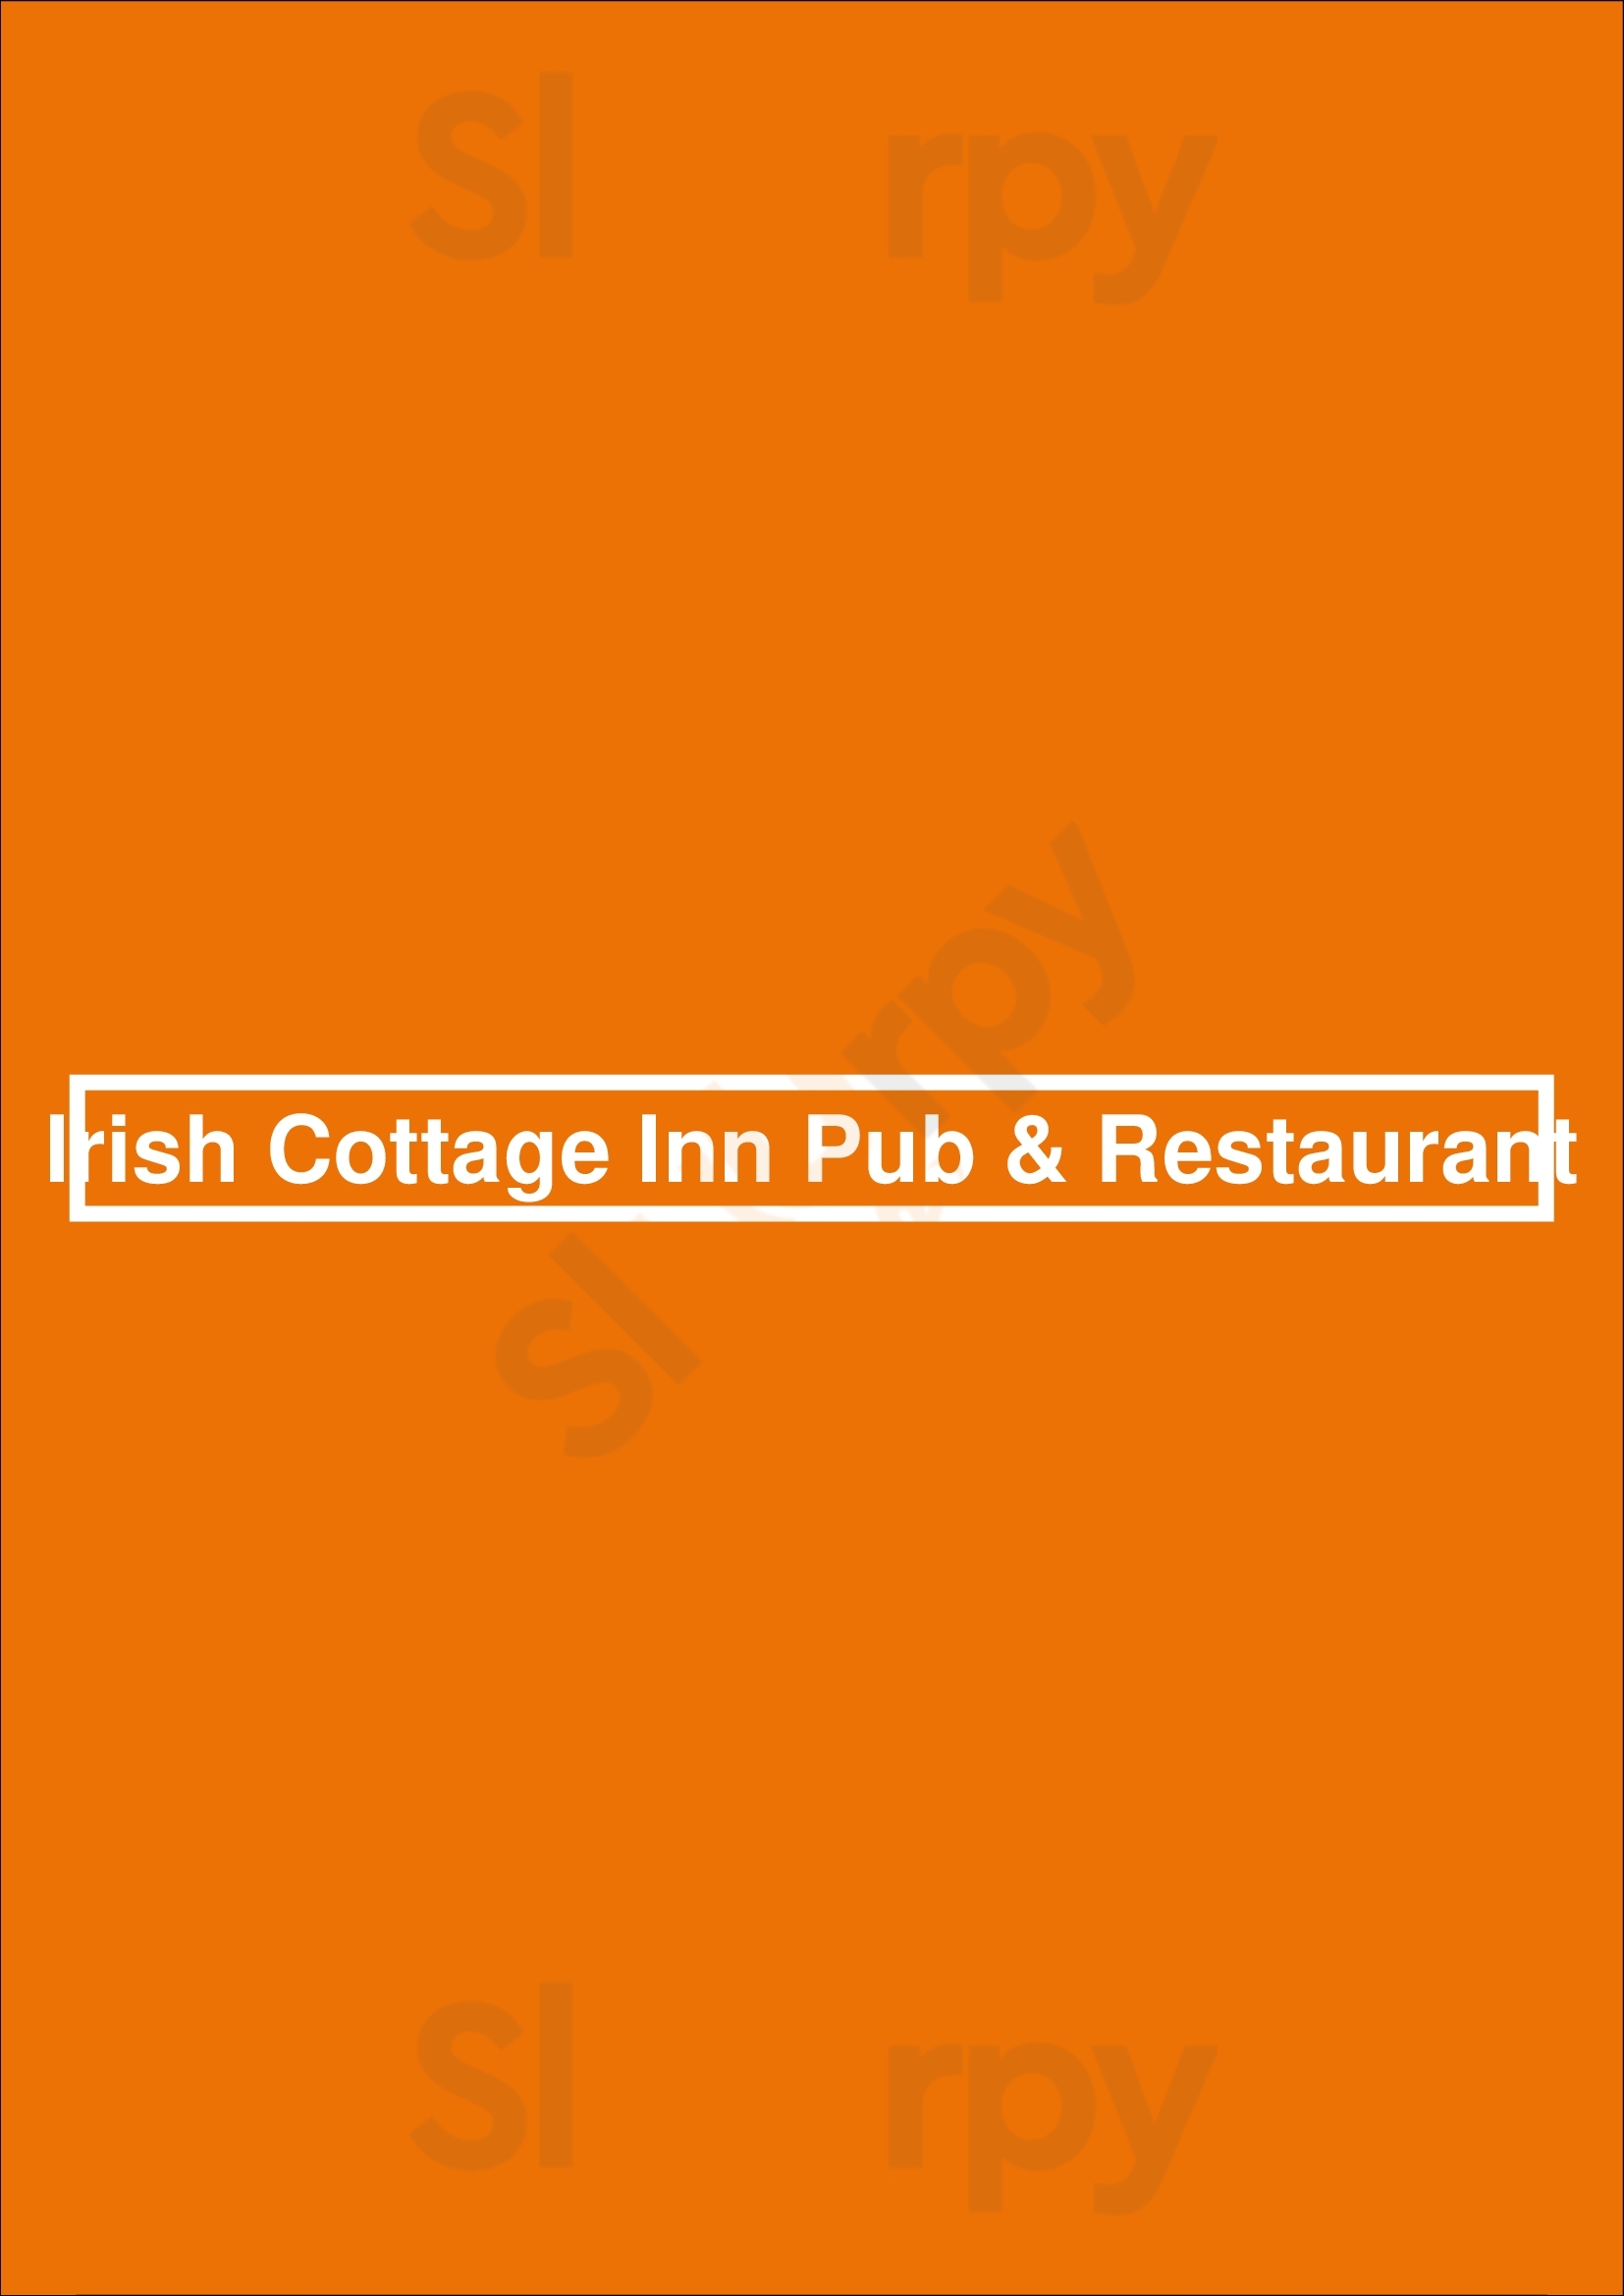 Irish Cottage Inn Pub & Restaurant Franklin Menu - 1